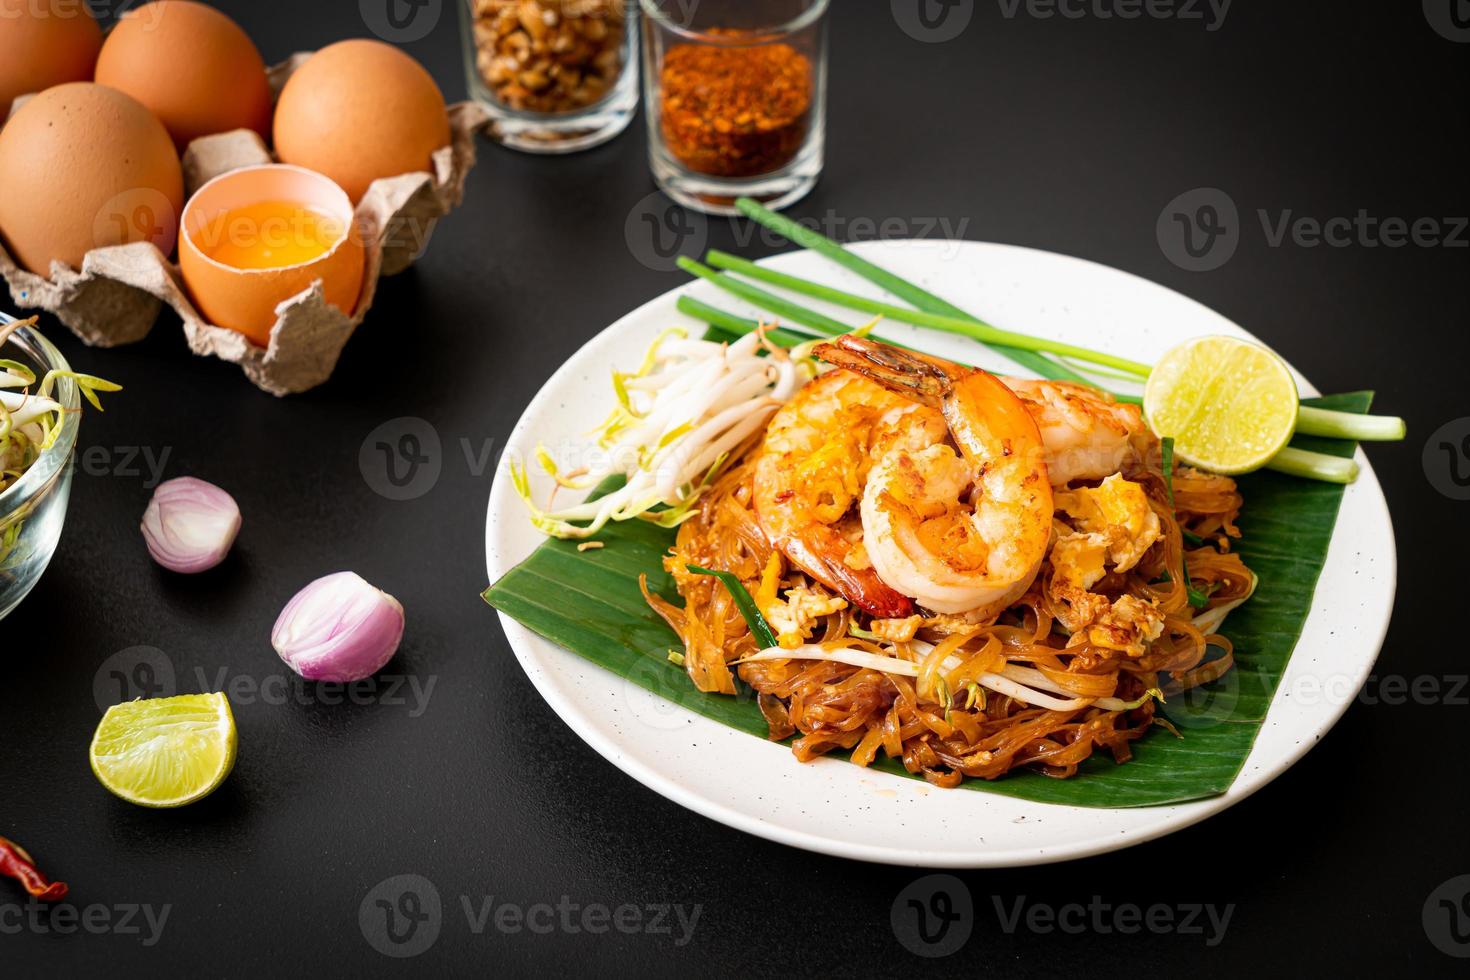 pad thai - macarrão de arroz frito foto